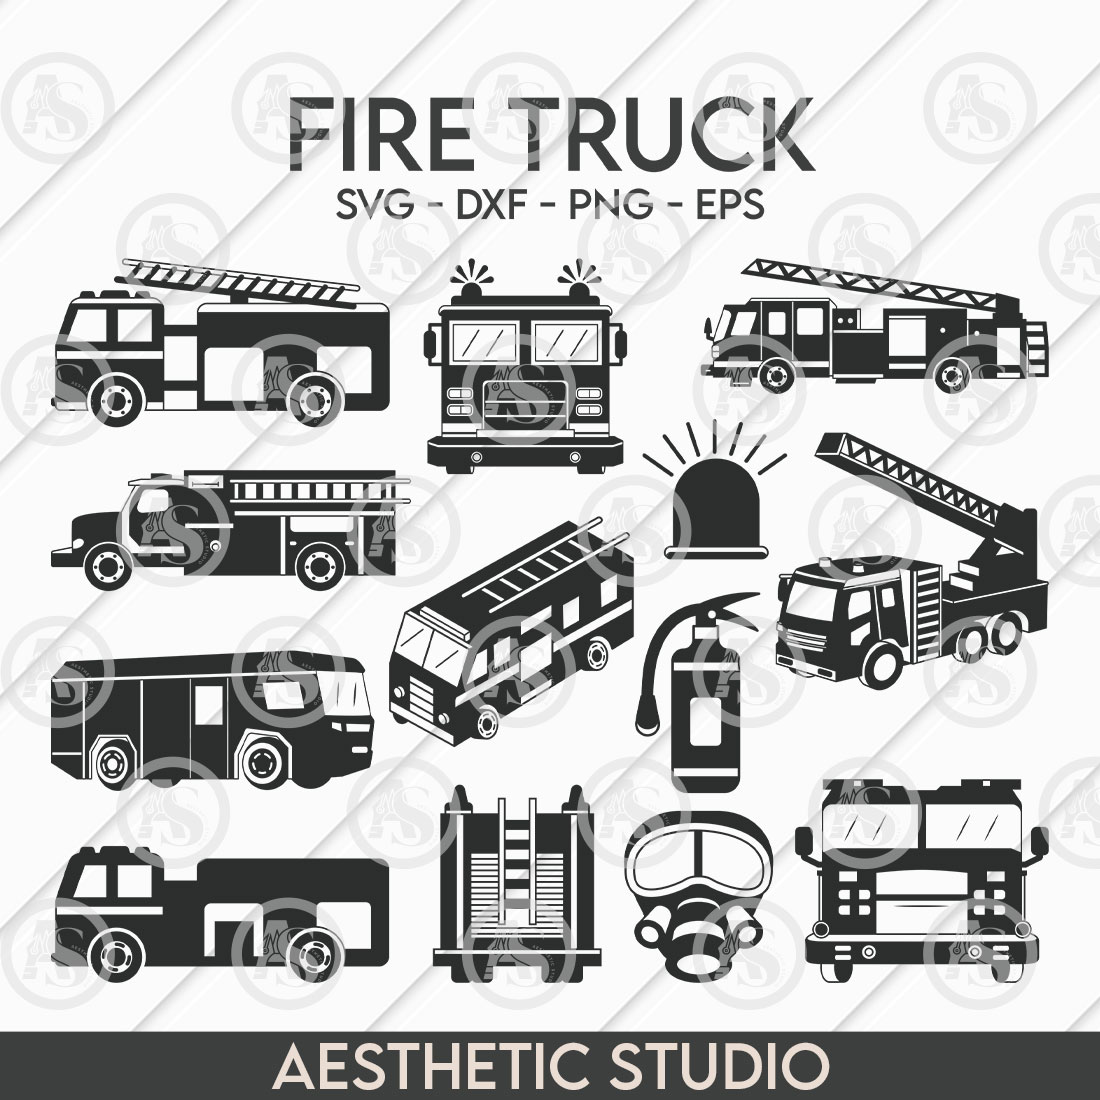 bcs0015 fire truck 01 746